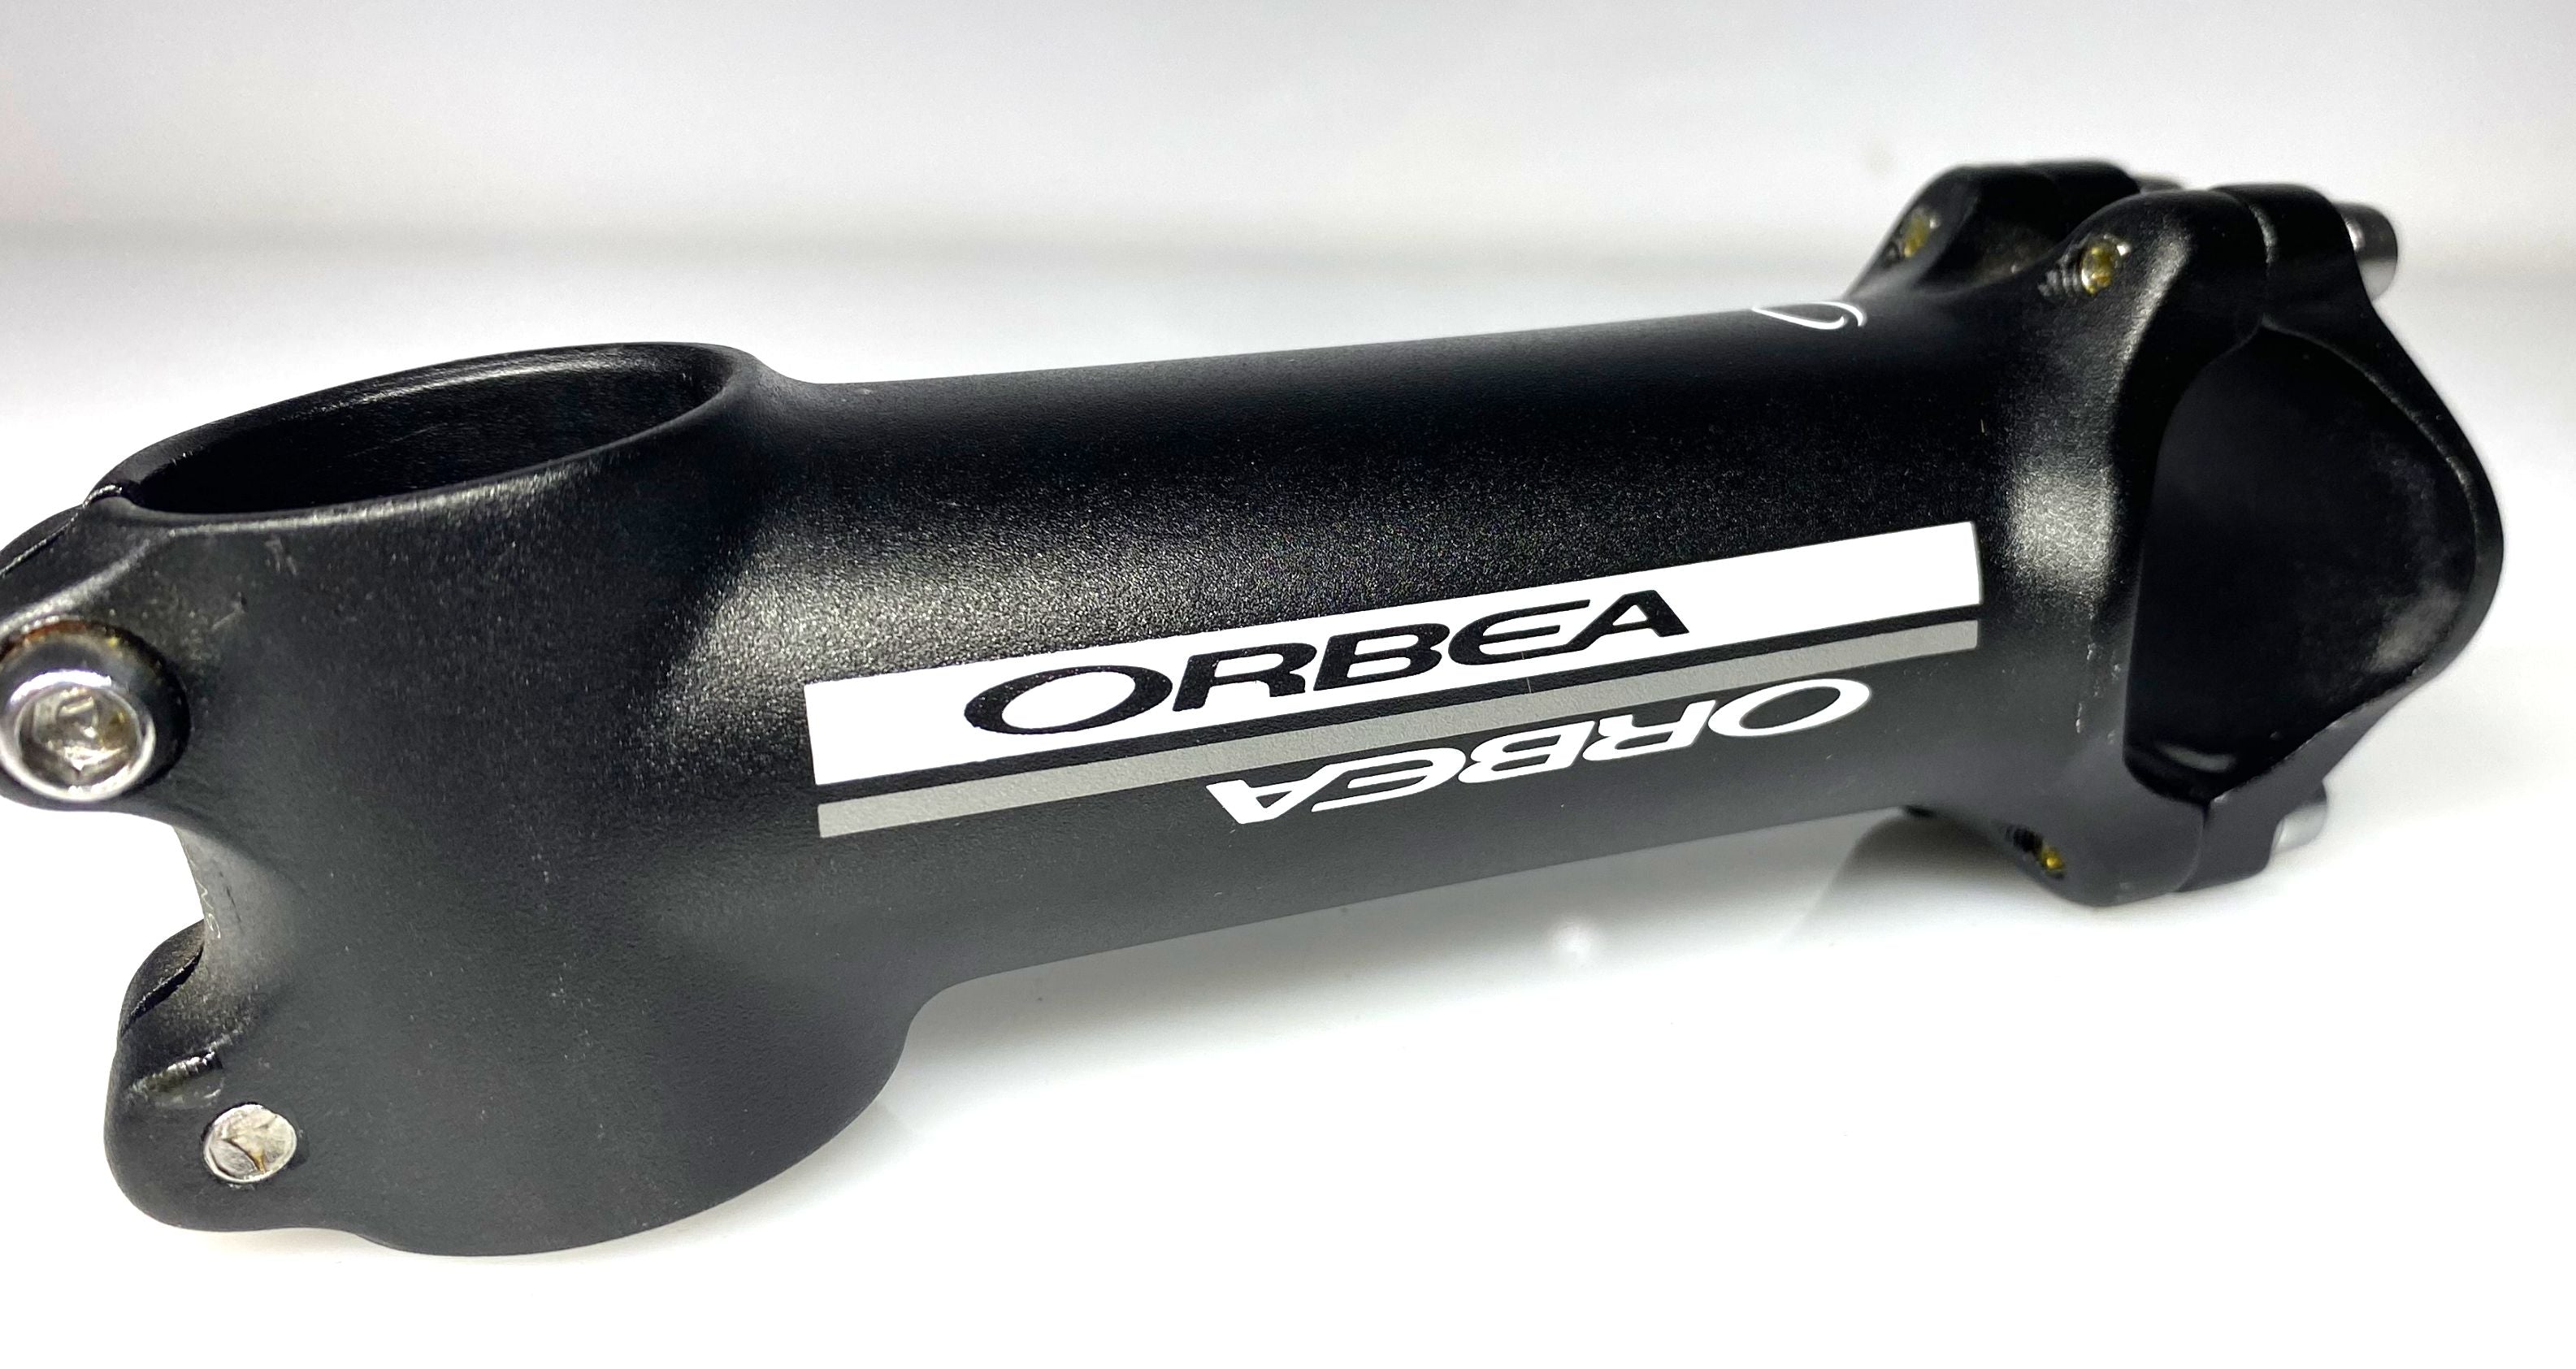 Orbea Bike Stem 31.8 mm x 105mm x 1-1/8" Threadless Black NEW